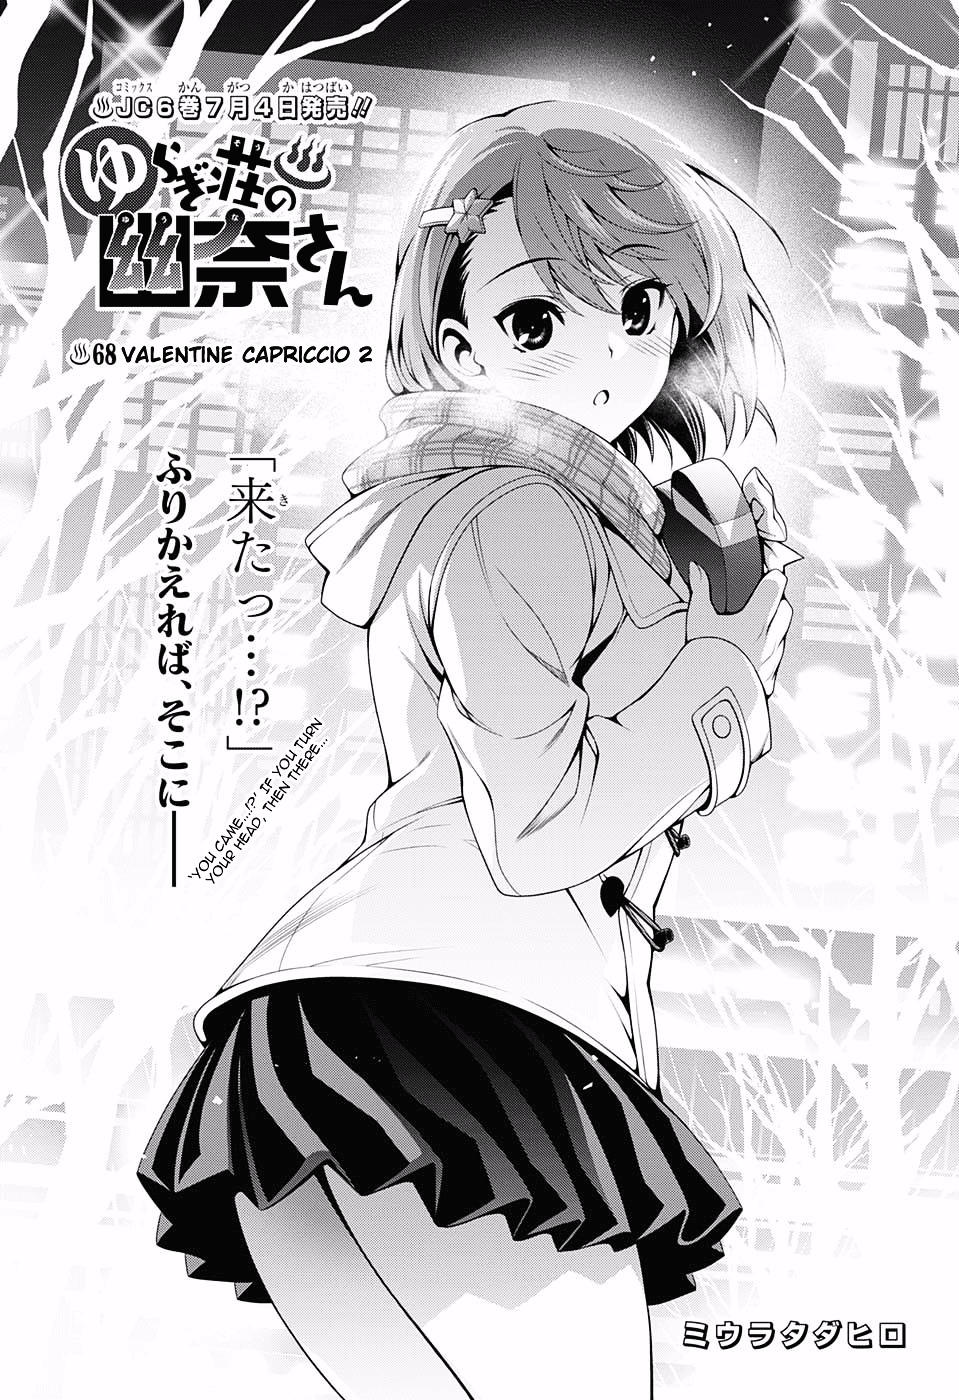 Read Yuragi-Sou No Yuuna-San Vol.17 Chapter 150: The Yuragi Inn In Big Boob  Panic?! on Mangakakalot